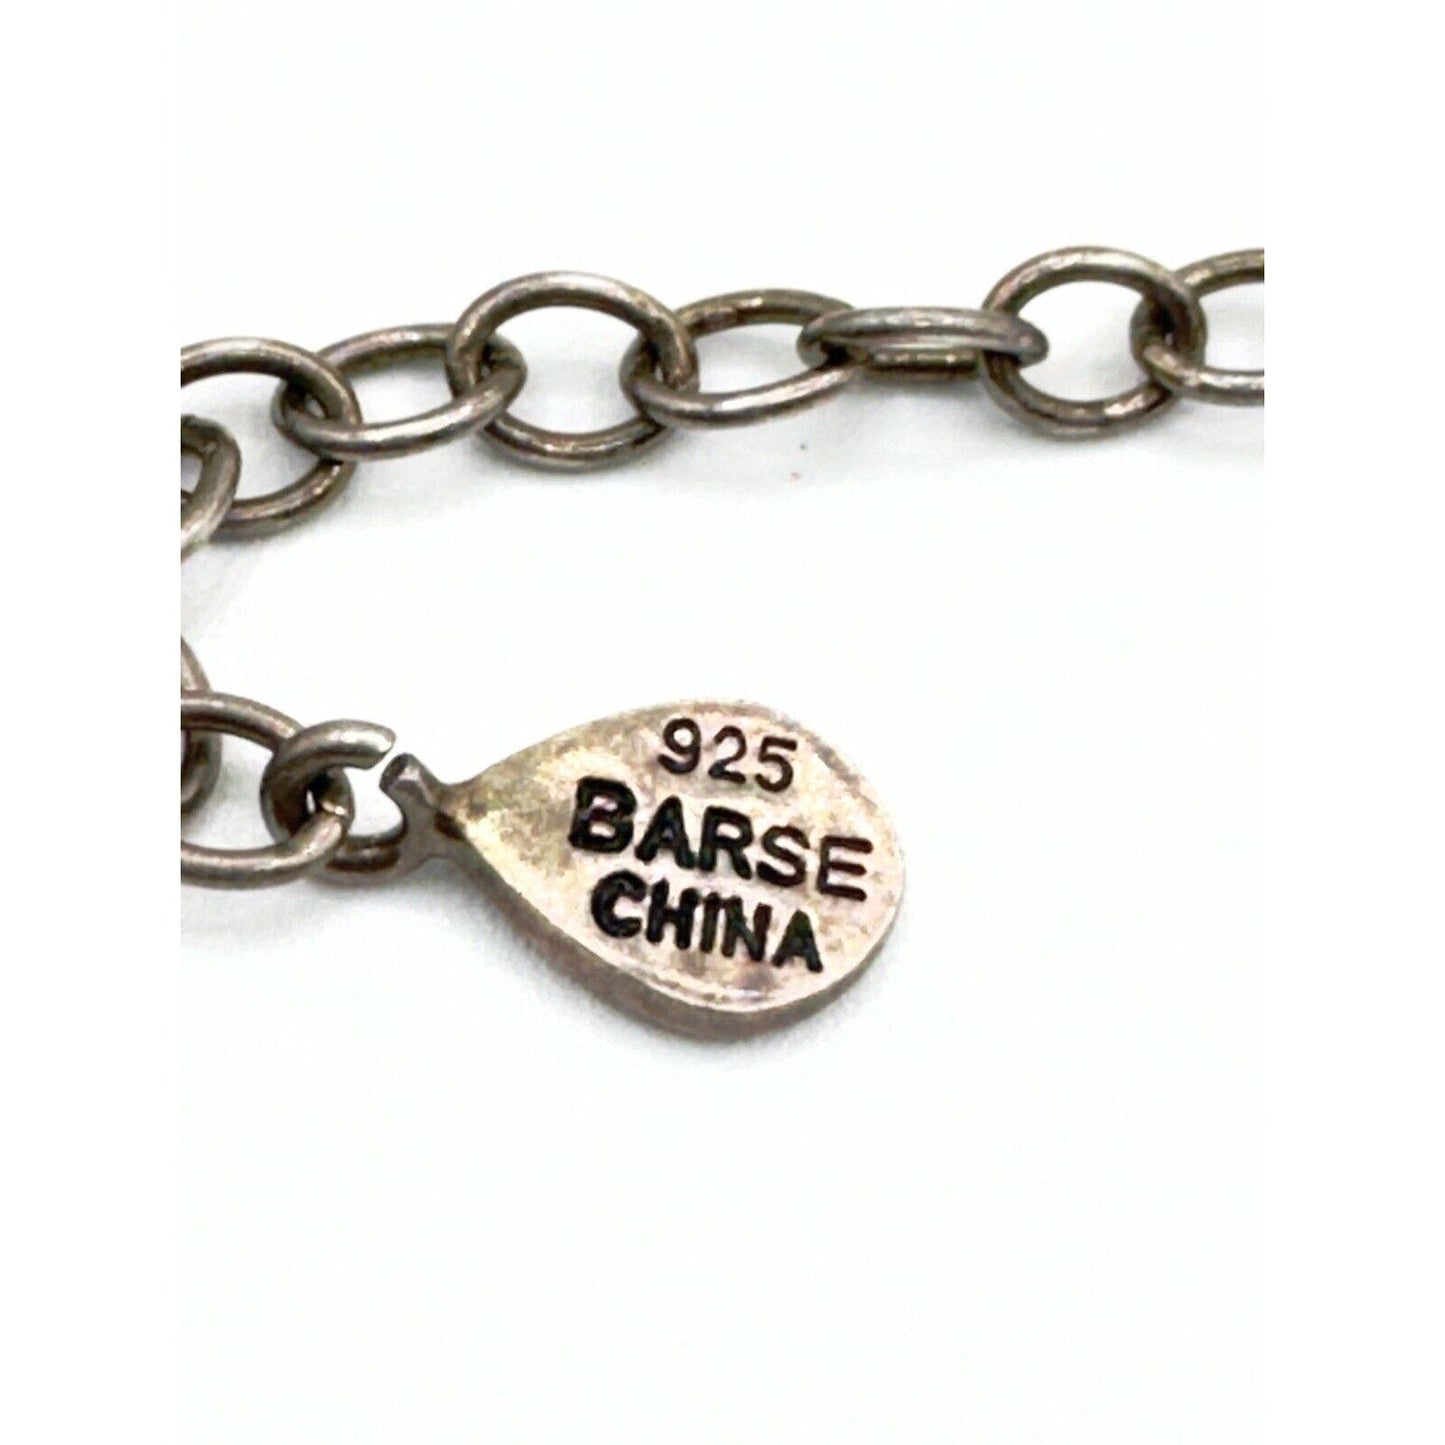 BarseBarse Amber & Abalone 925 Sterling Silver Necklace 15-17” - Black Dog Vintage